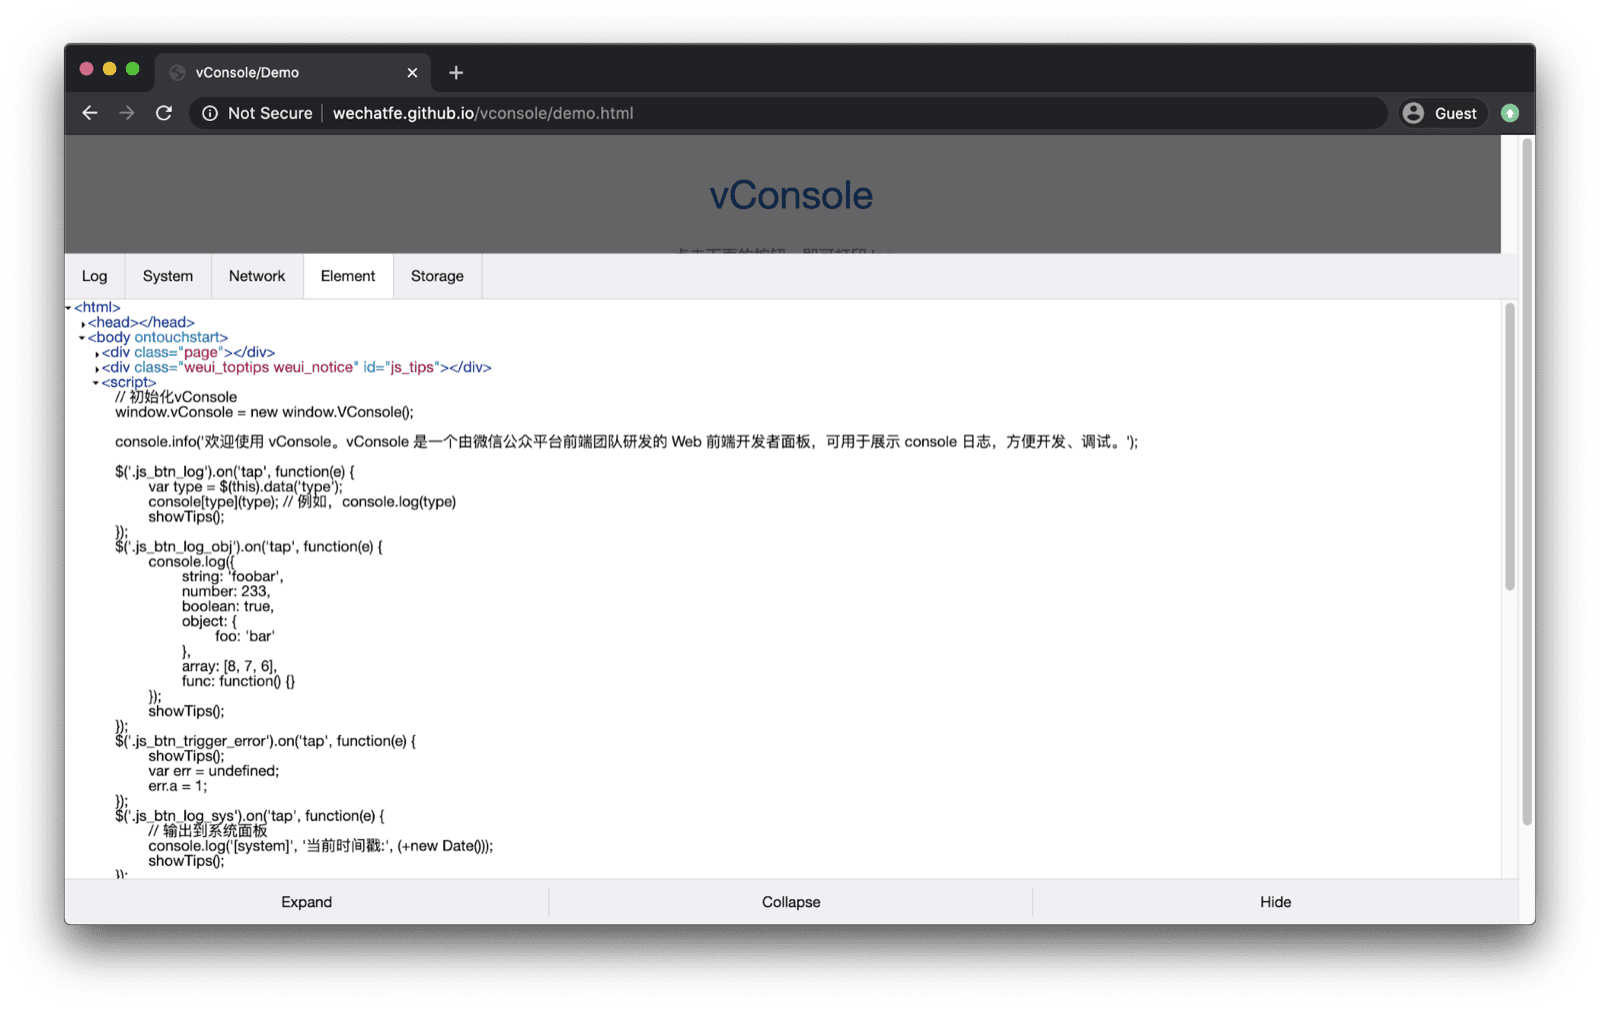 App de demo de vConsole. Se abrirá en la parte inferior y tendrá pestañas para registros, sistema, red, elementos y almacenamiento.